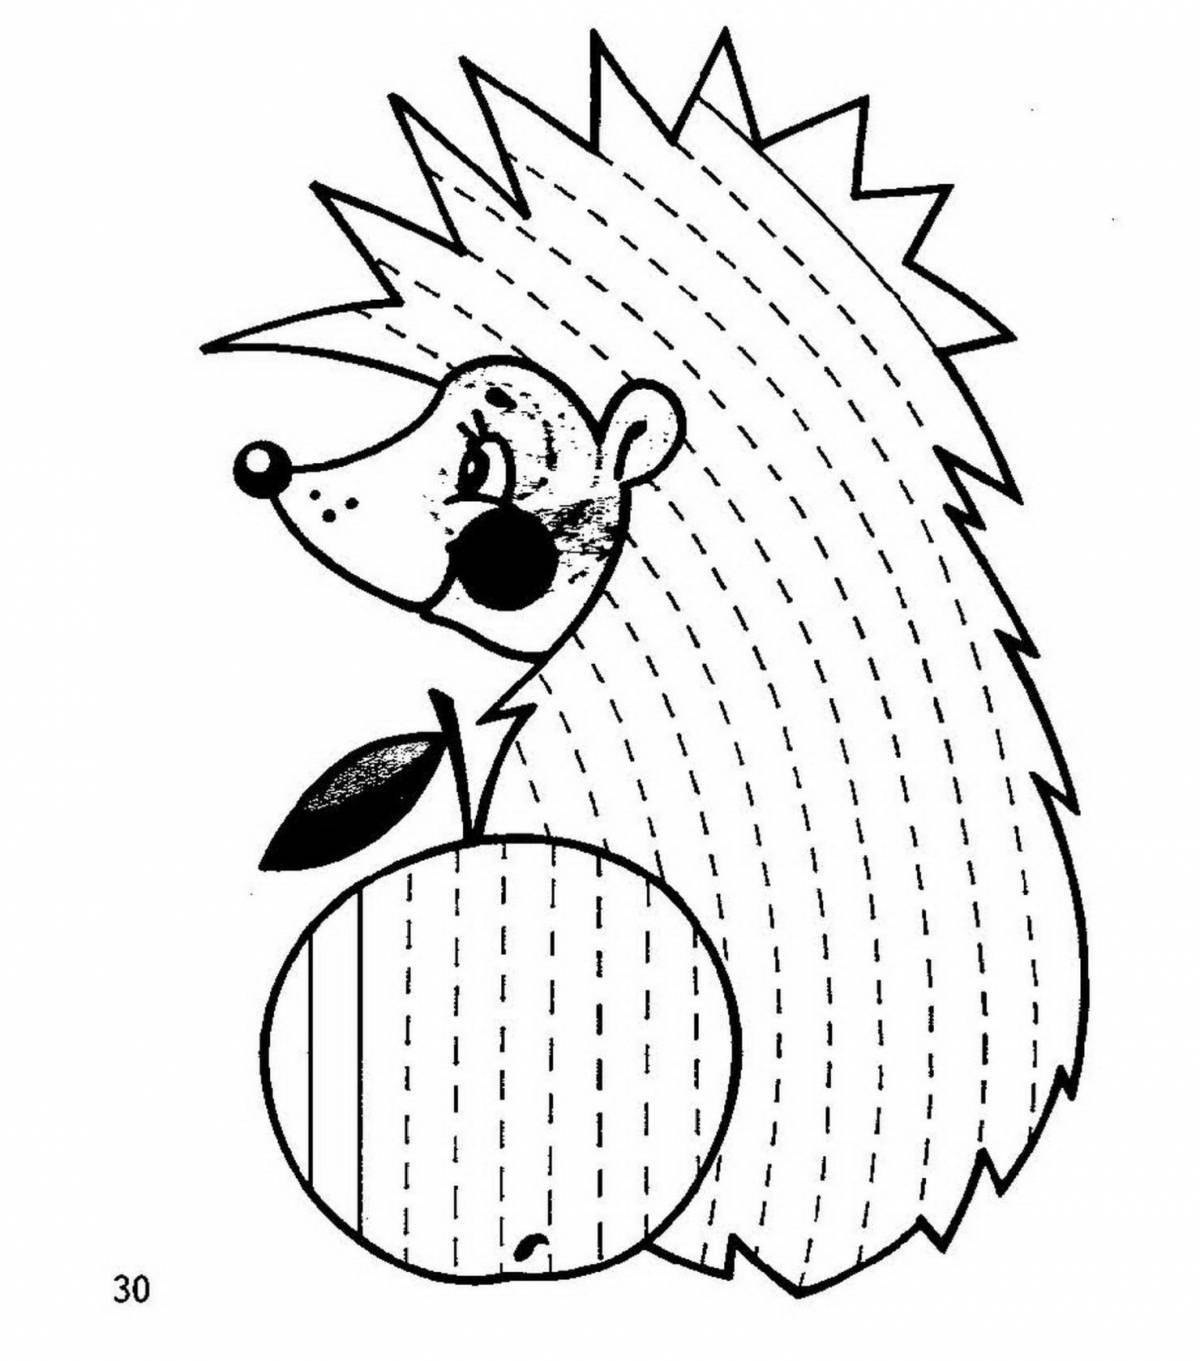 Adorable pre-k hedgehog coloring book